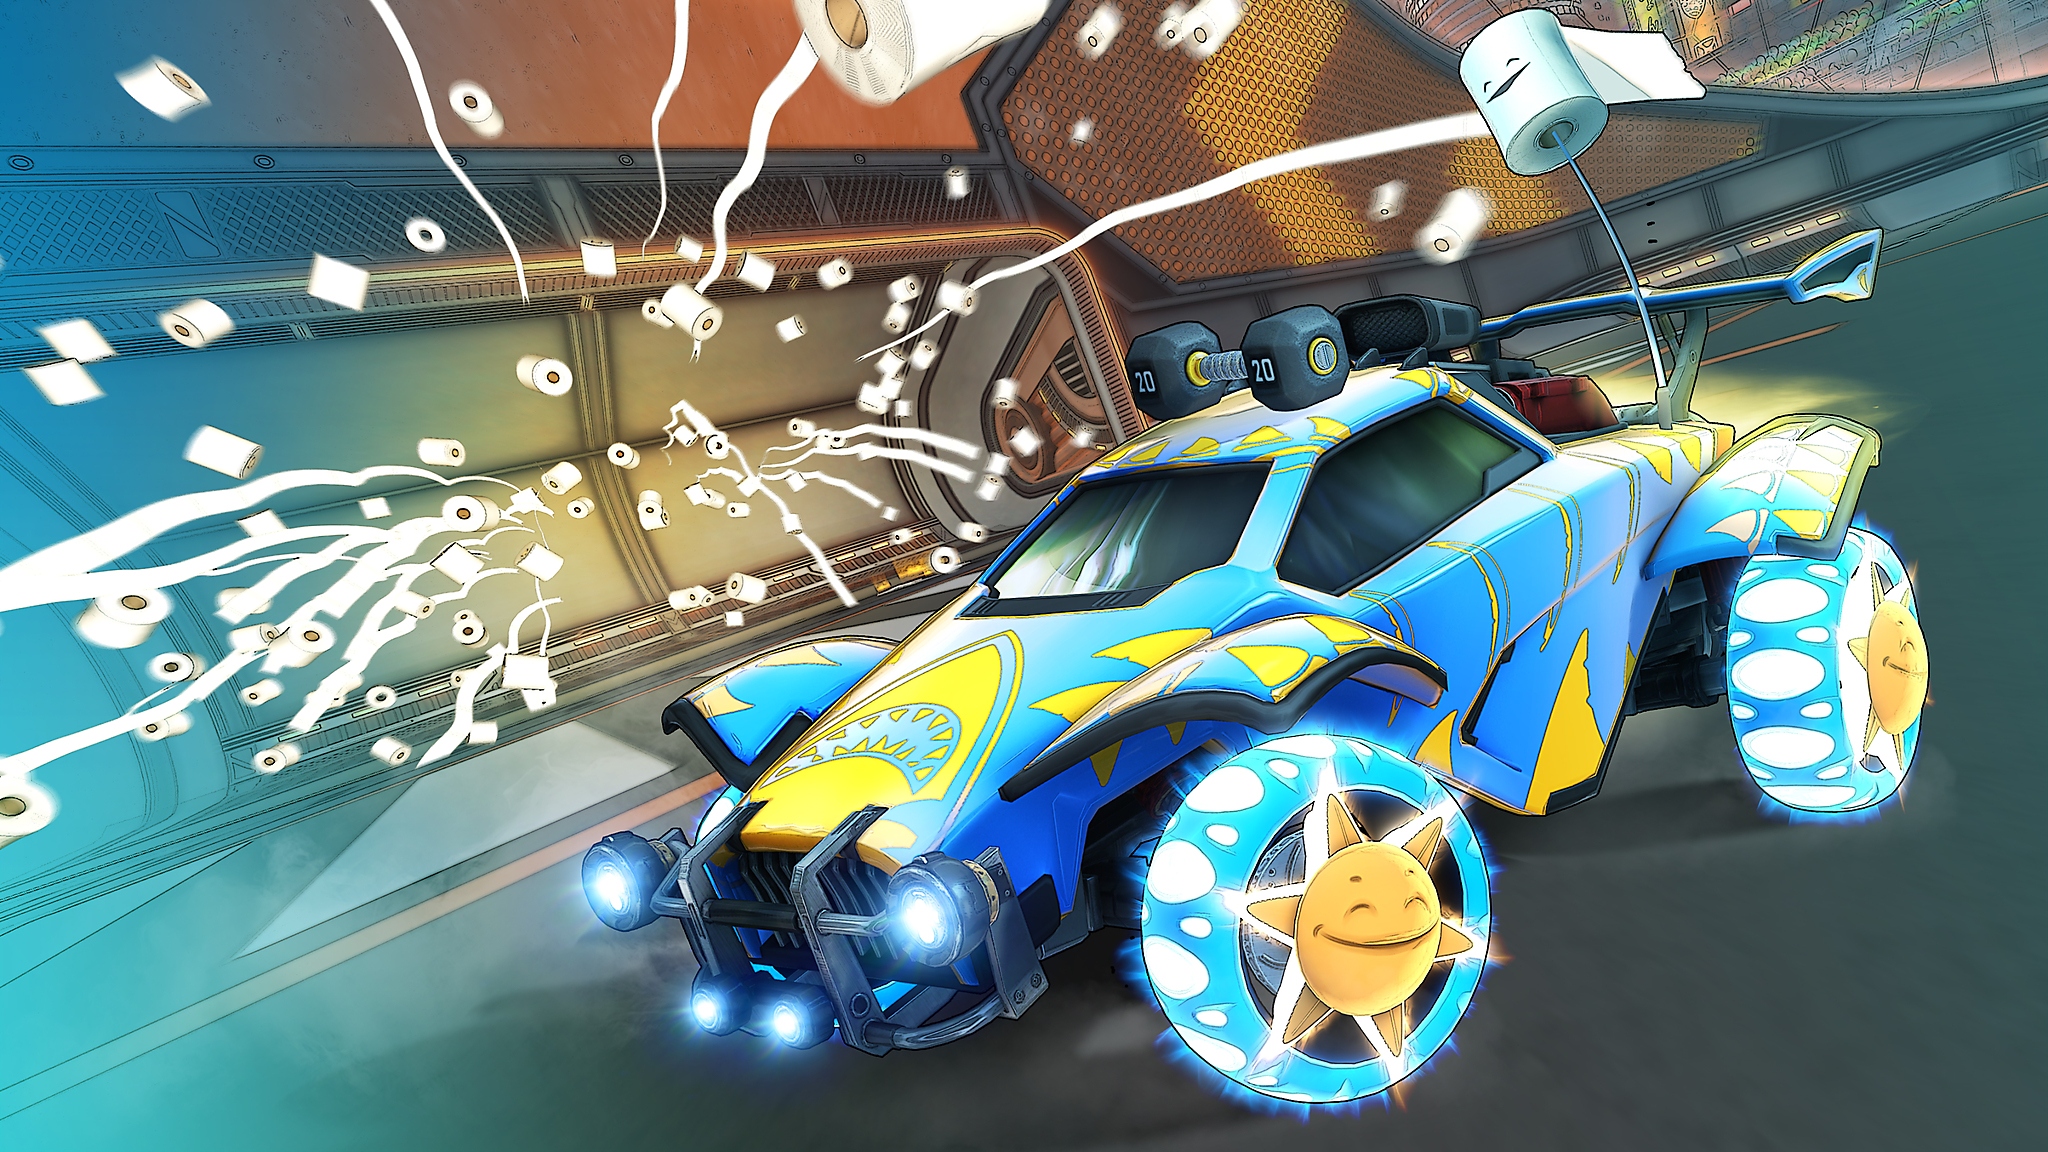 Capture d'écran de Rocket League Saison 6 montrant une voiture bleue et jaune, avec beaucoup de rouleaux de papier de toilette lancés dans les airs